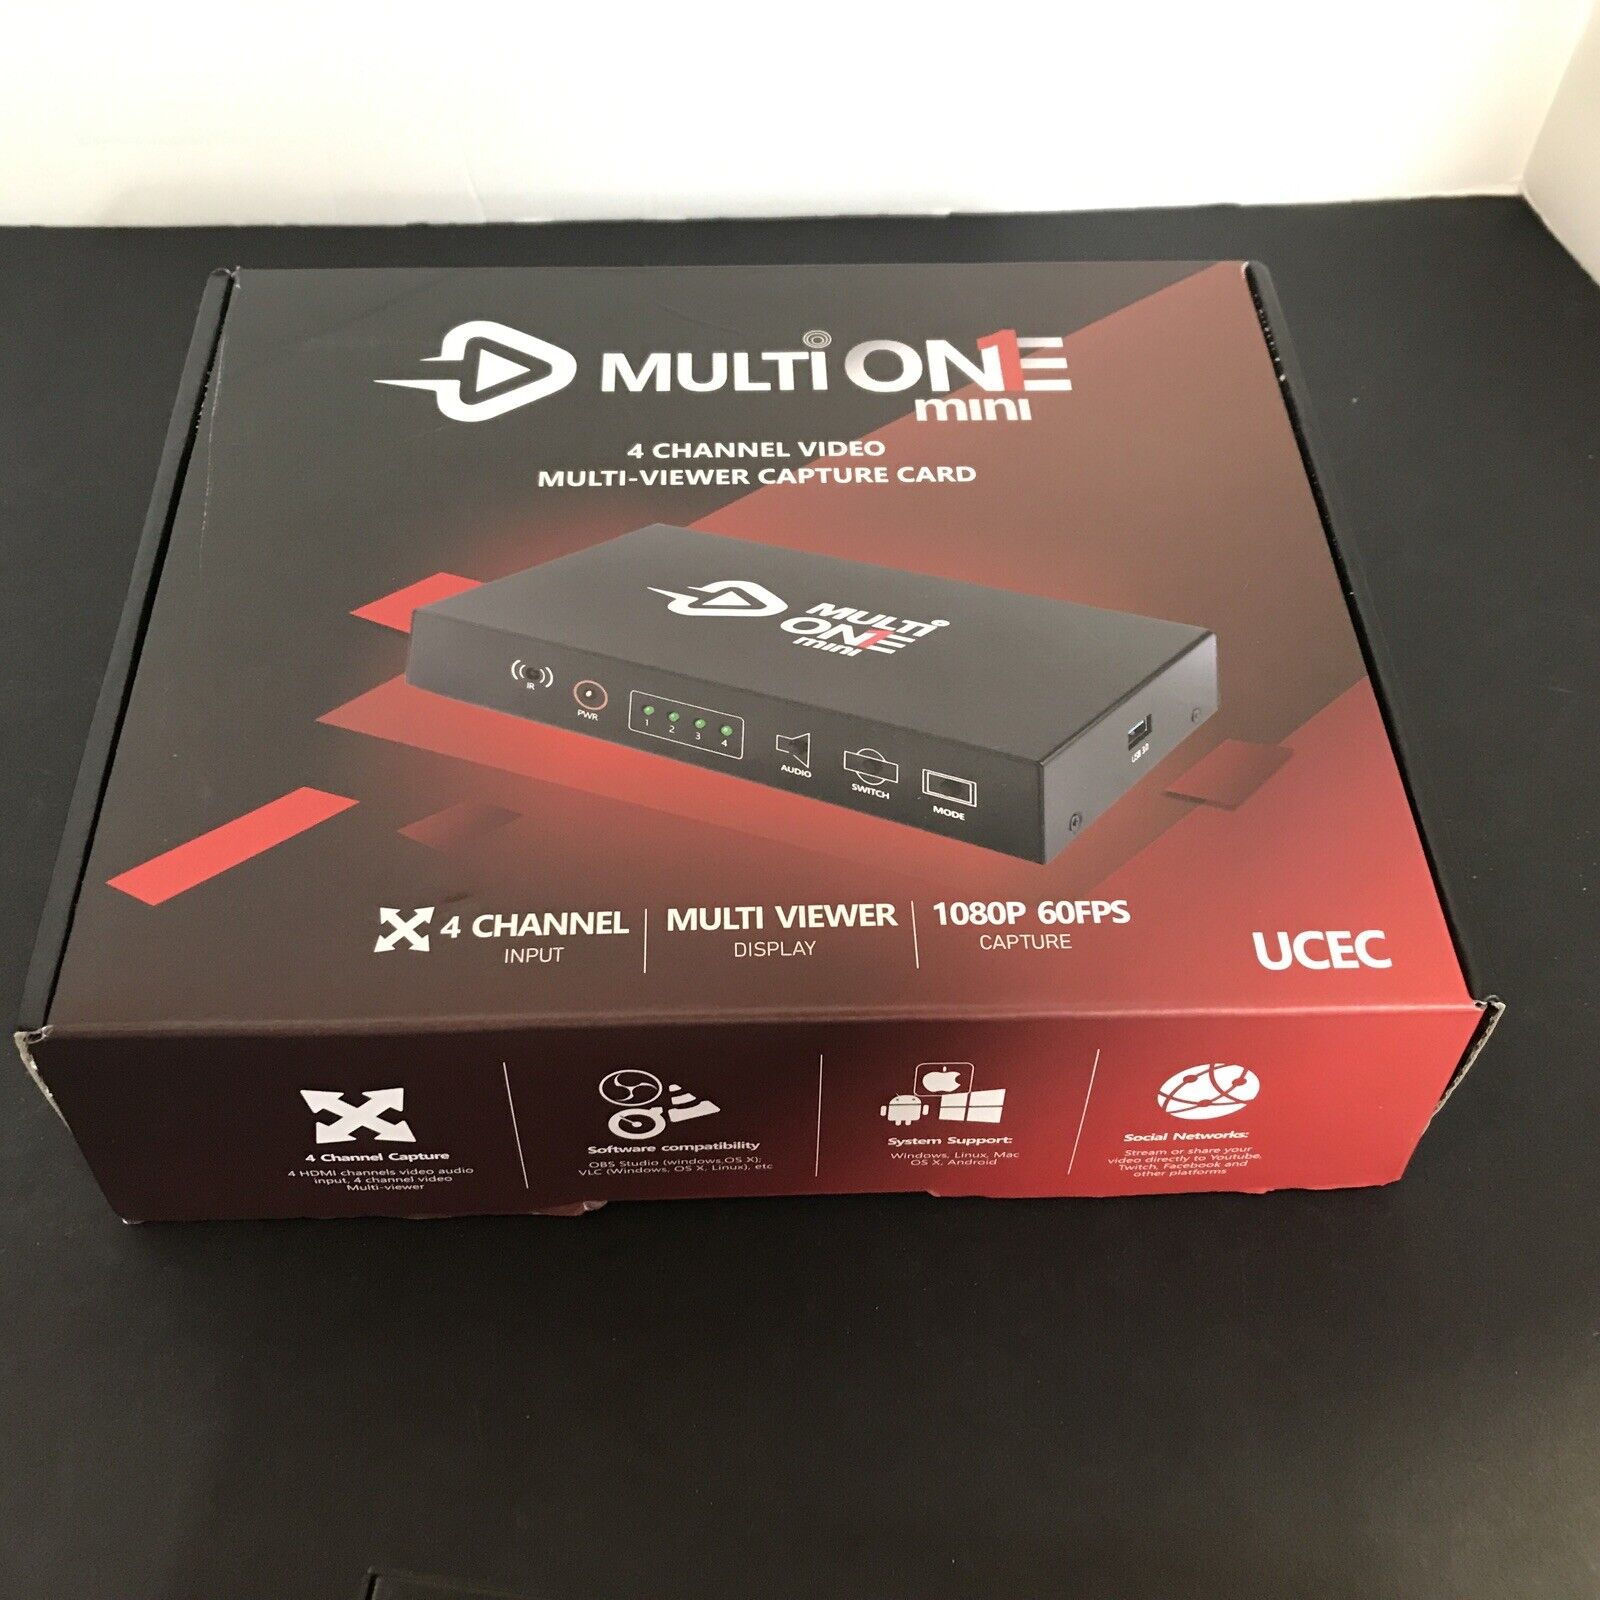 UCEC MultiOne Mini 4 HDMI Inputs Quad Channel Video Camera Capture Card 1080P60